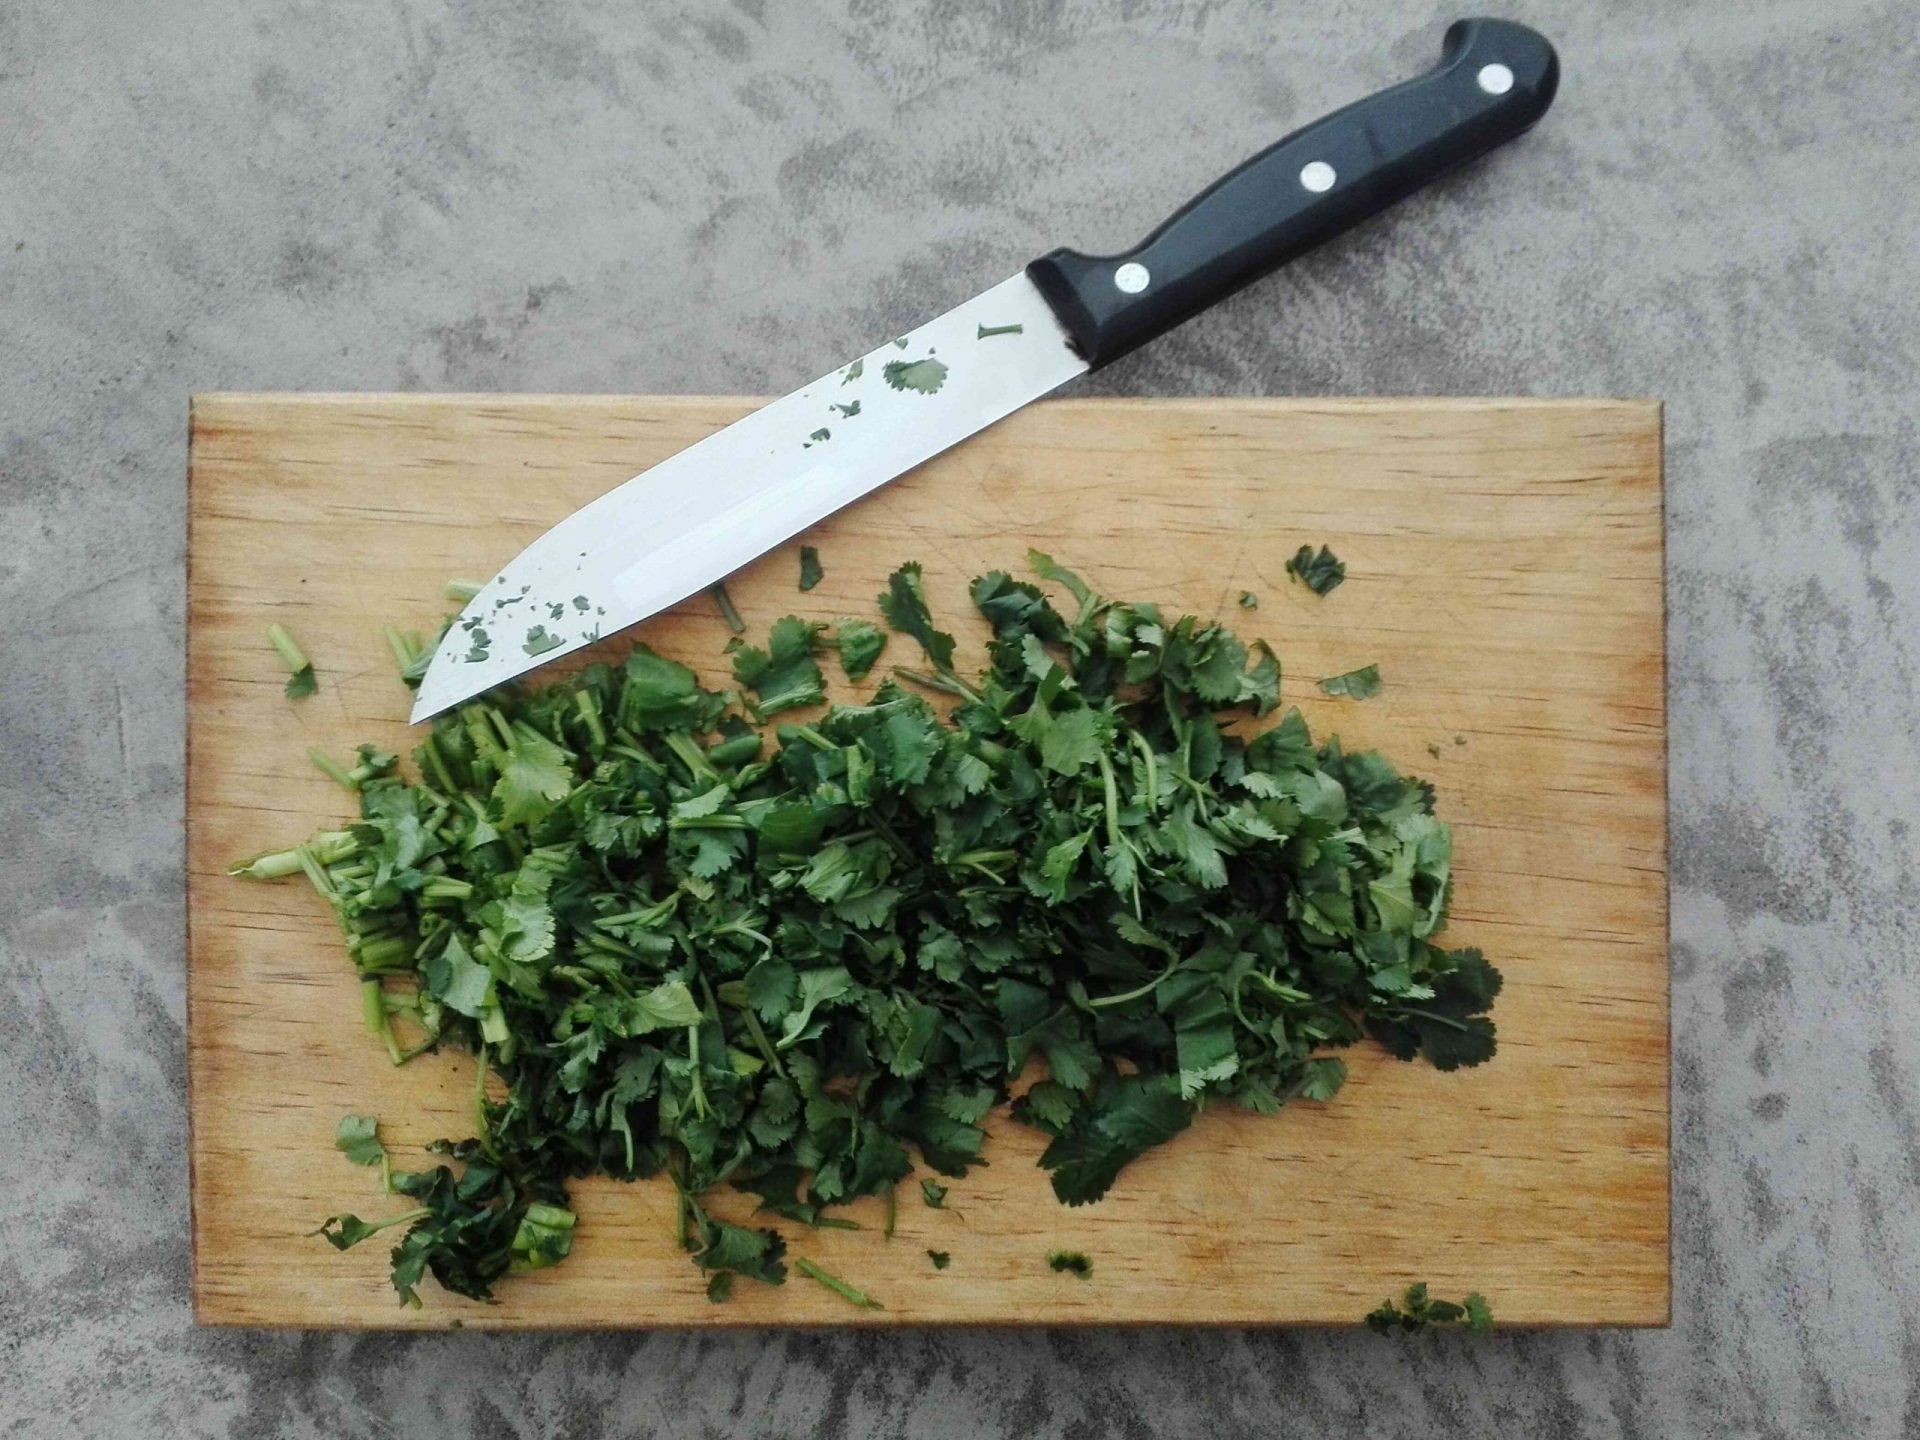 Vista directa del cilantro picado por el cuchillo en la tabla de cortar